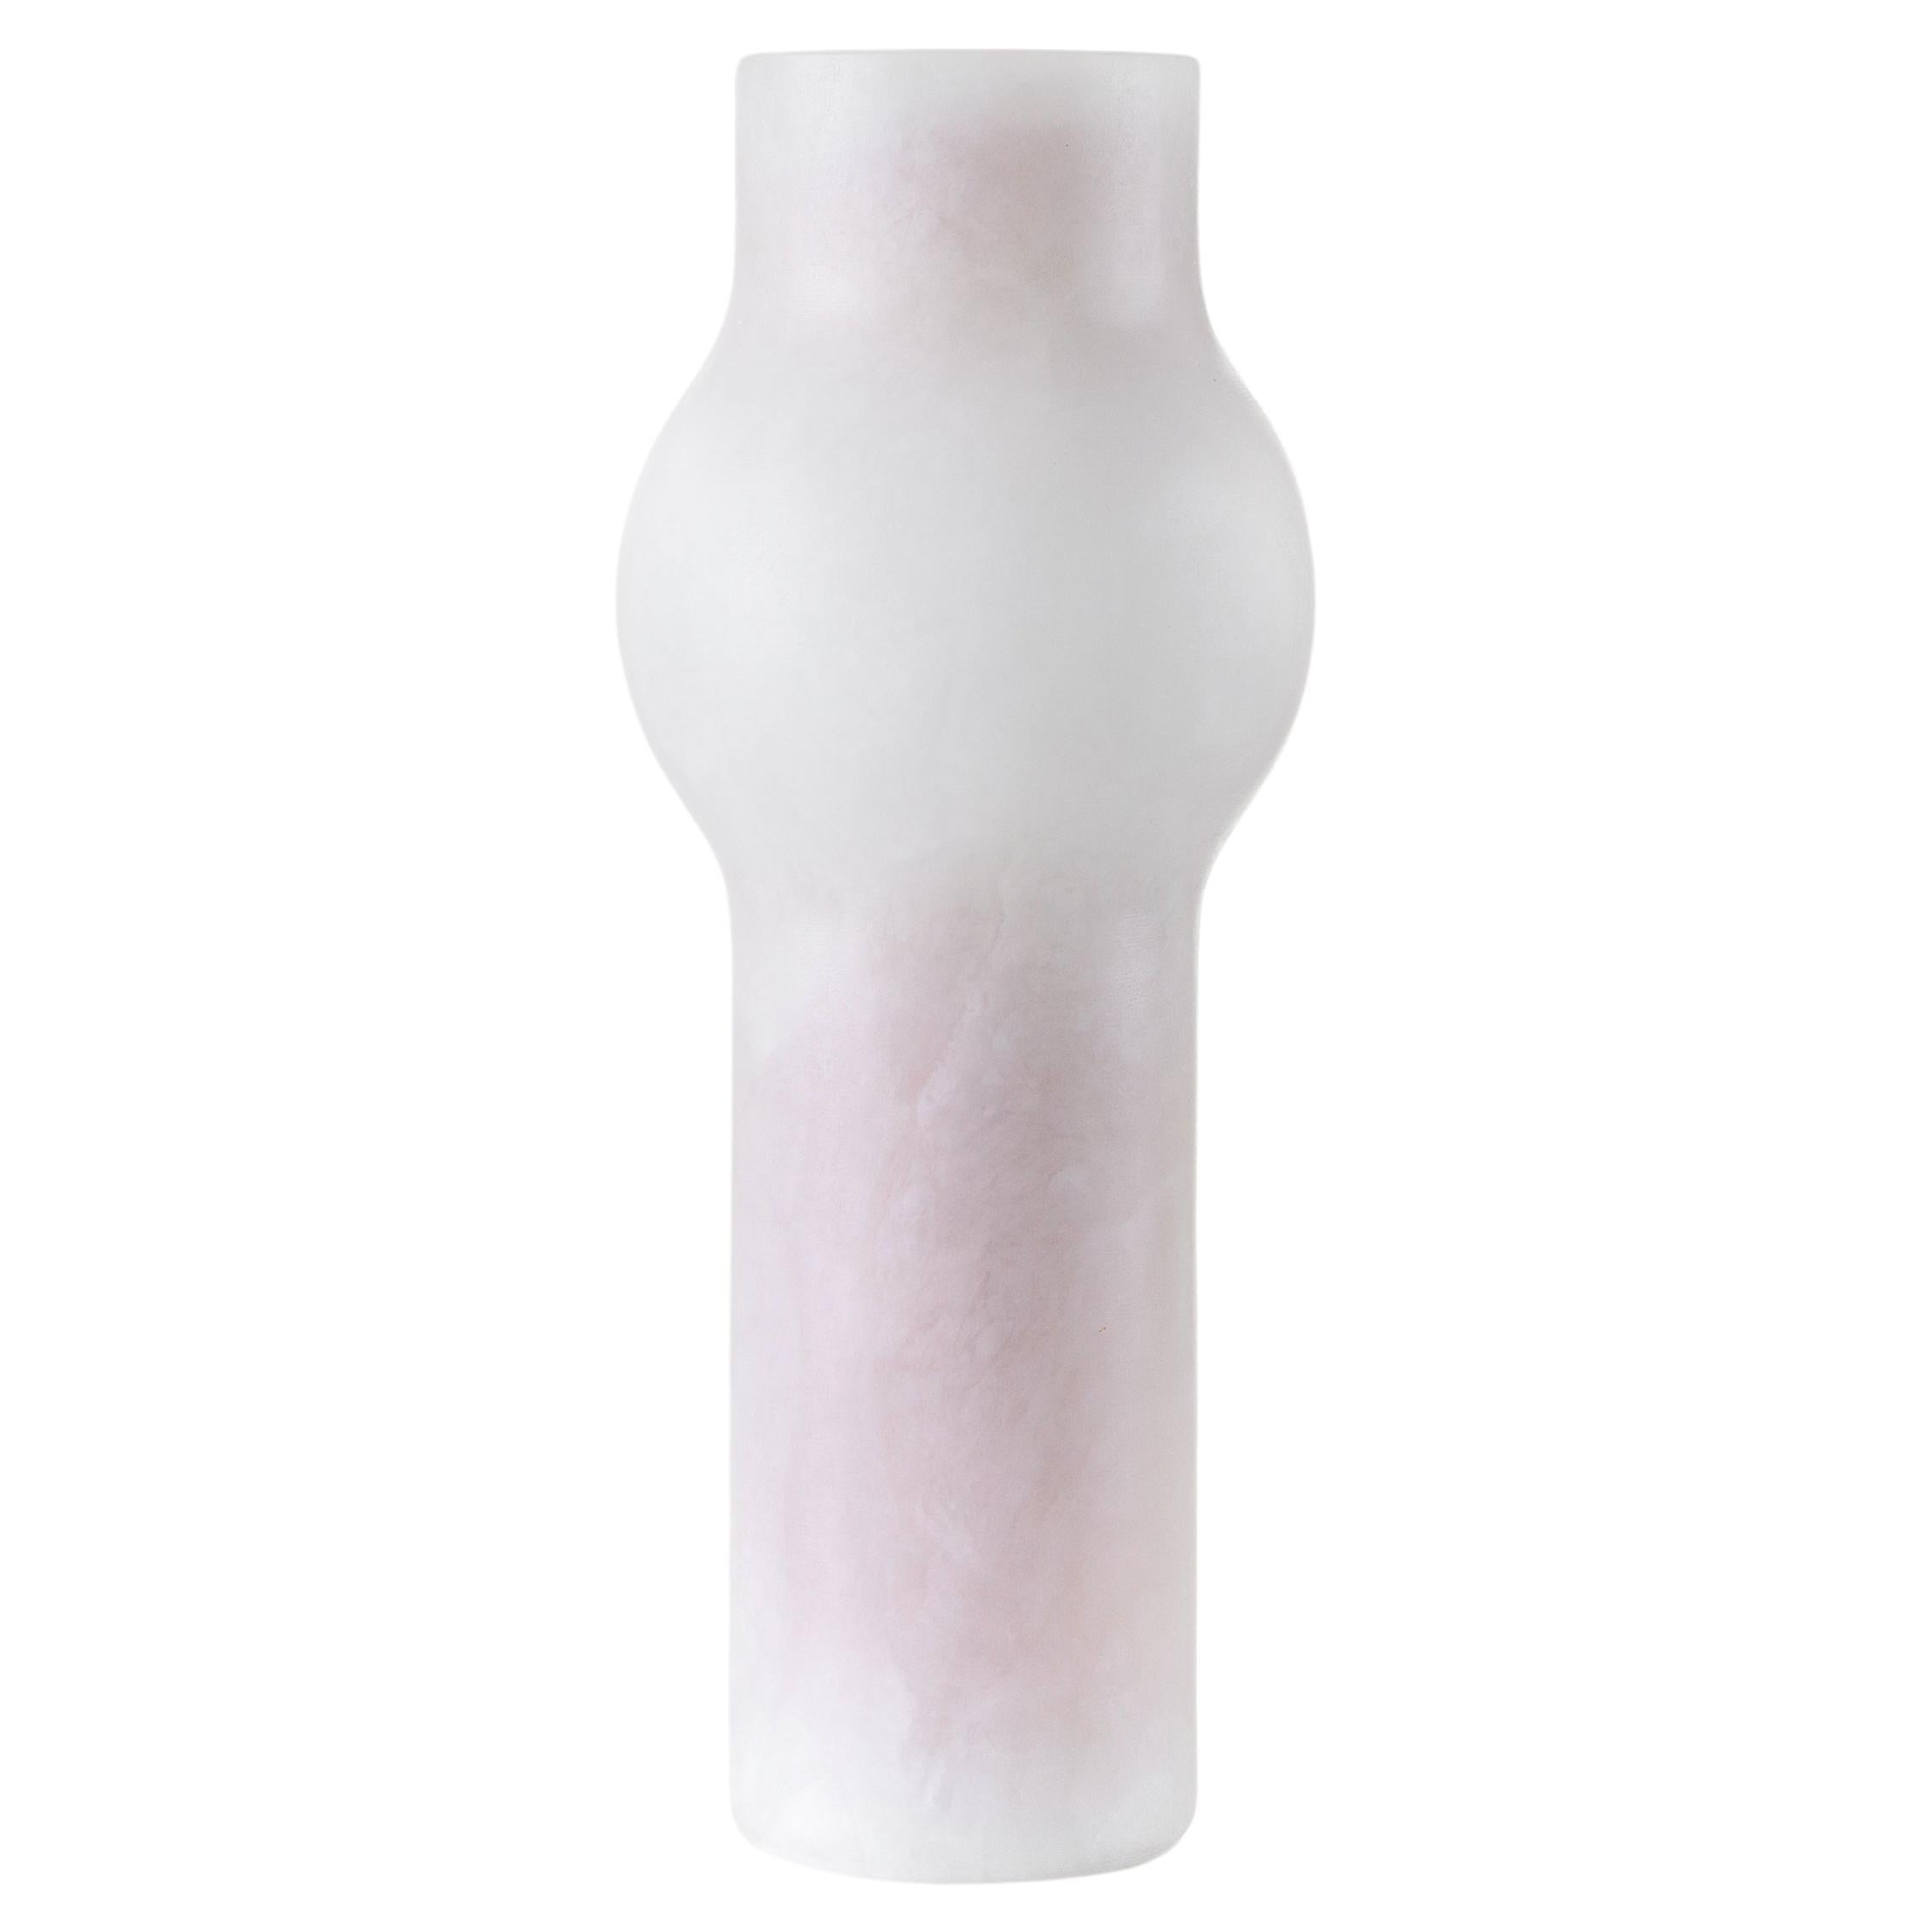 Fog Vase 03 in Alabaster For Sale